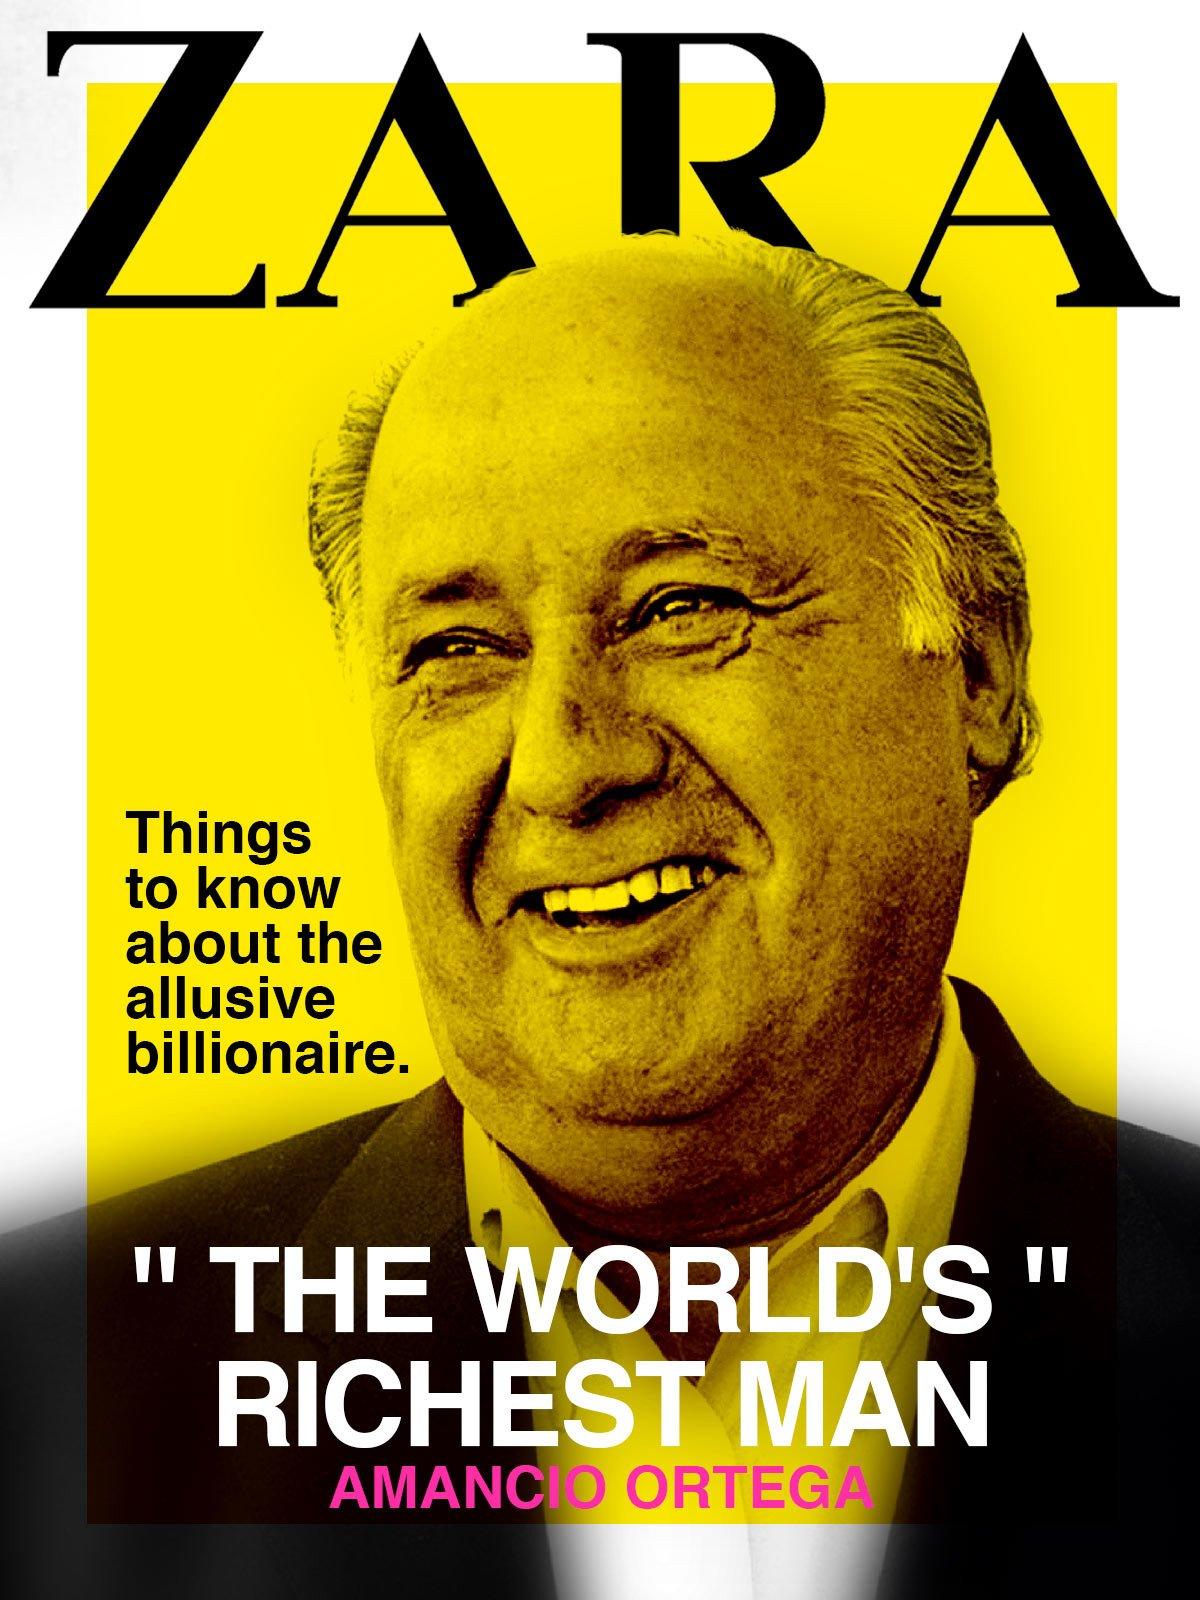 Watch Zara: The World's Richest Man